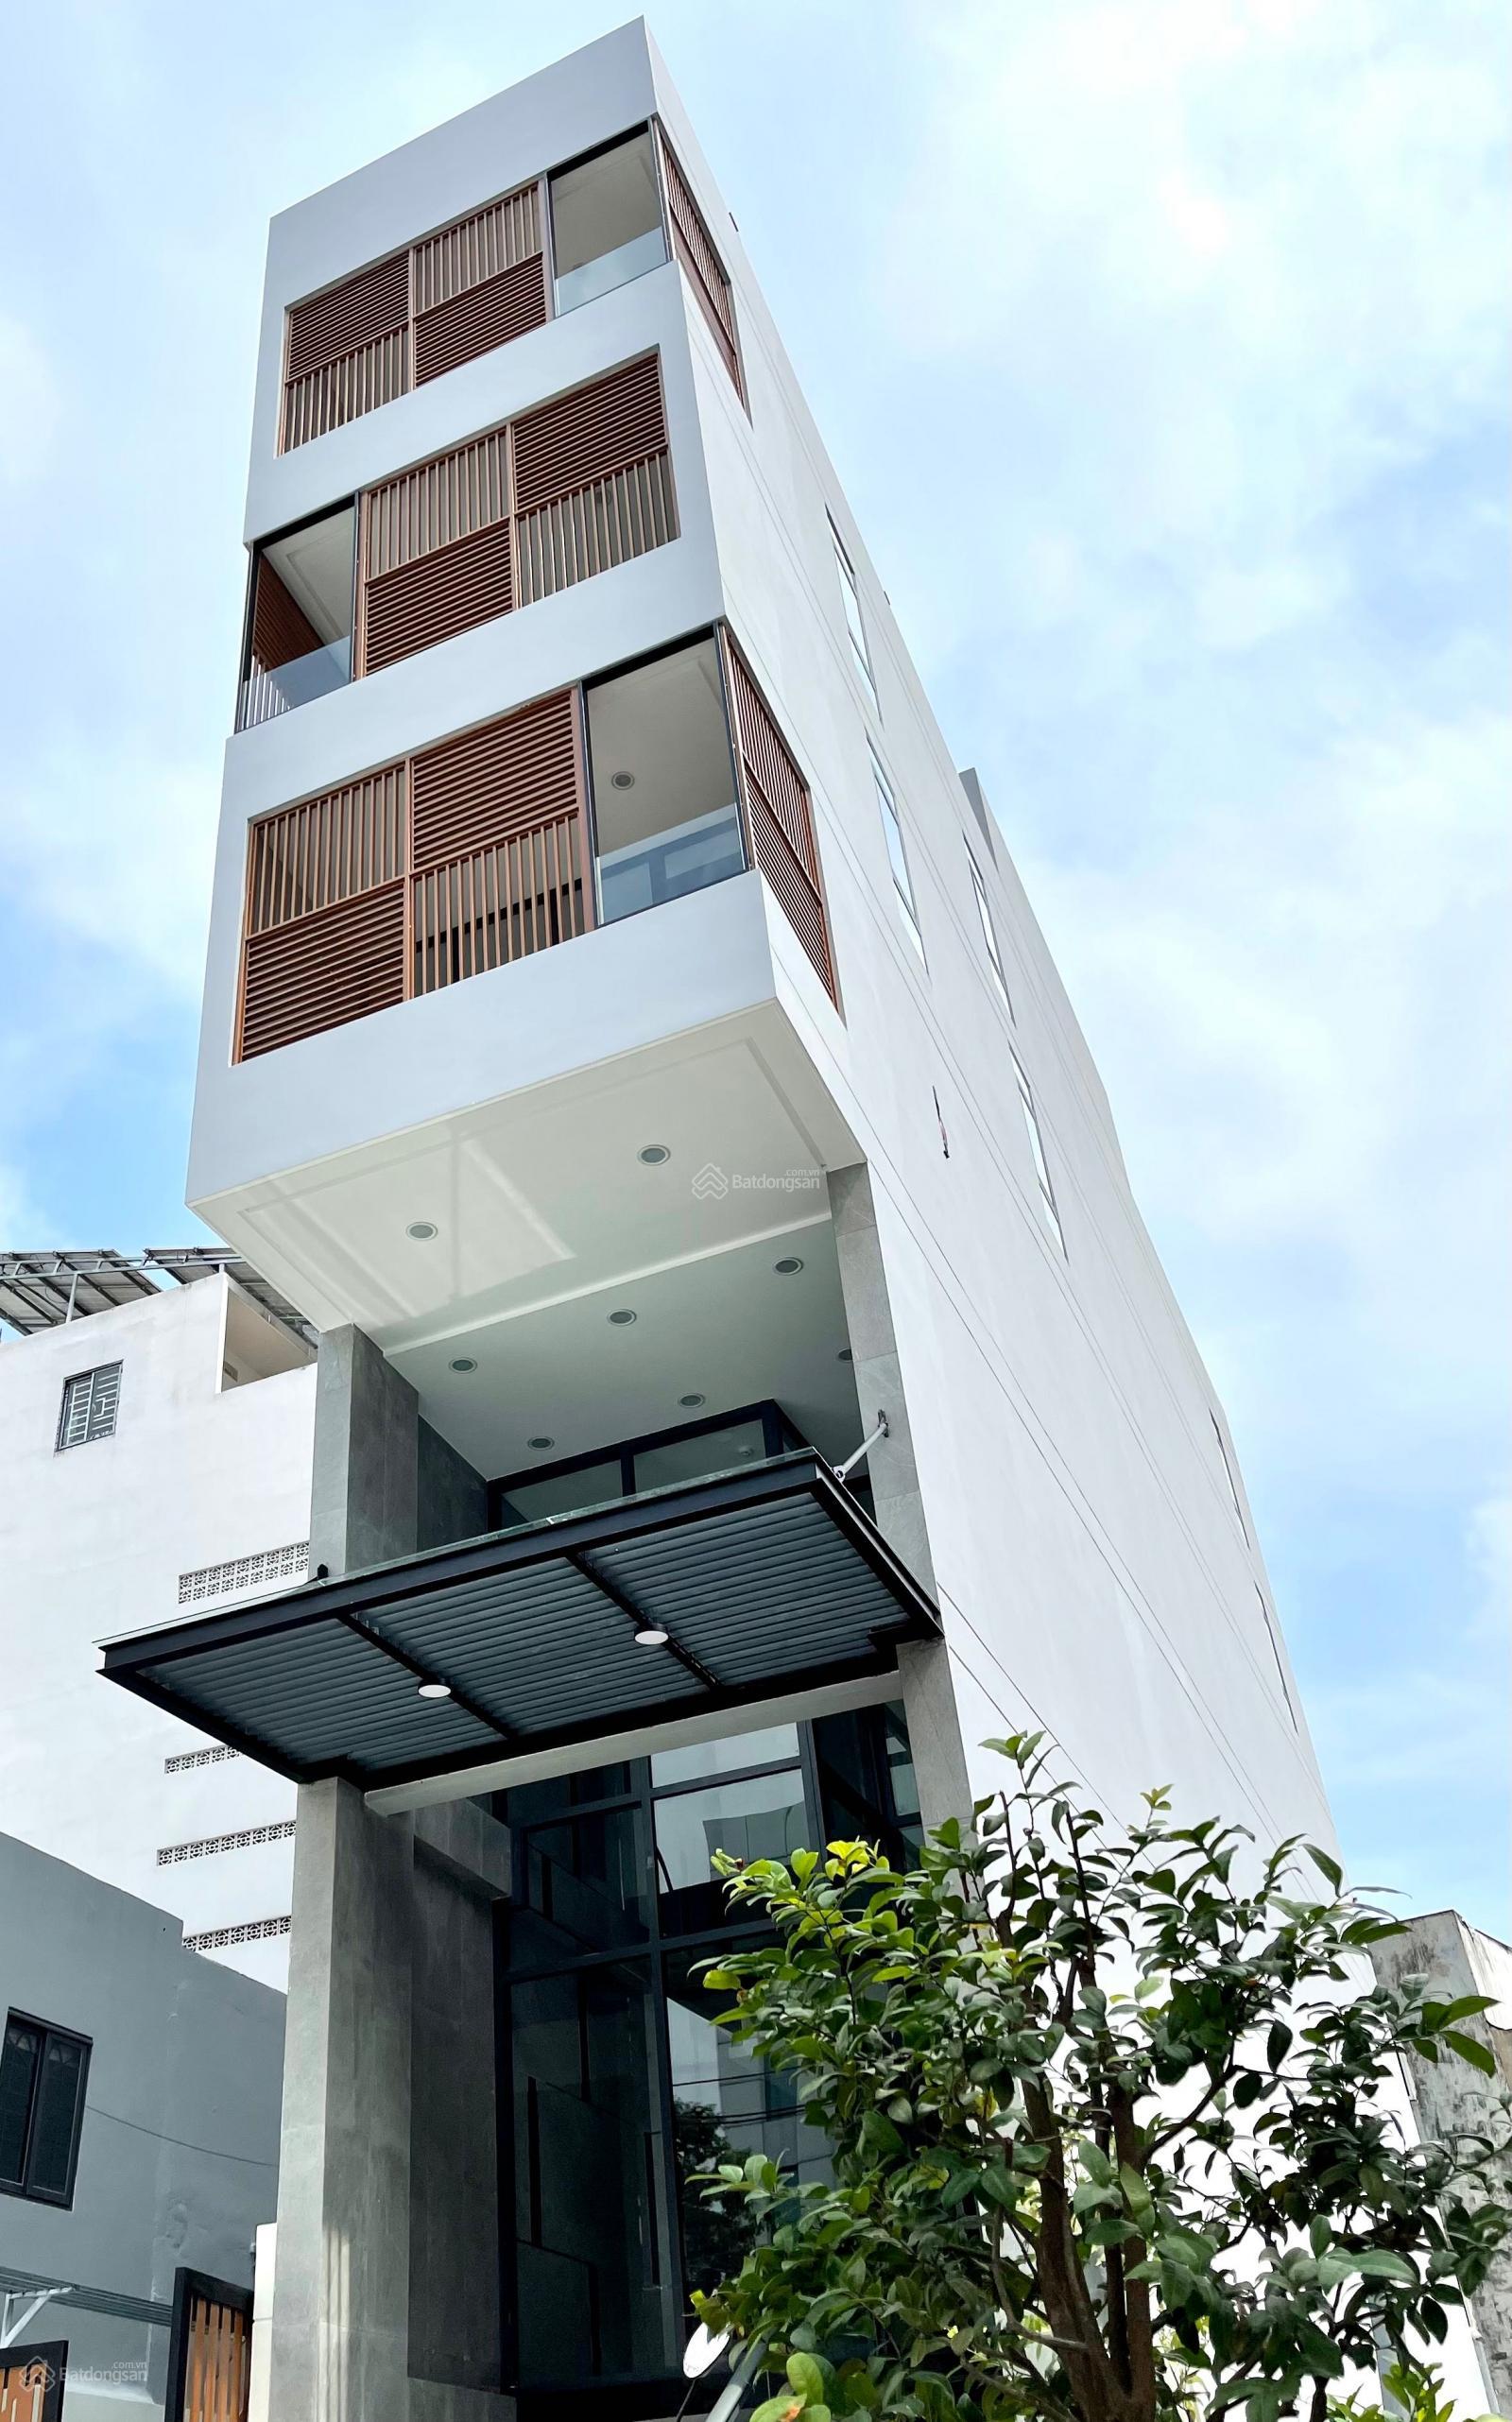 MT Phạm Hùng cho thuê nhà phố 6 tầng, thang máy, tầng hầm, sân rộng. Vị trí thuận tiện kinh doanh